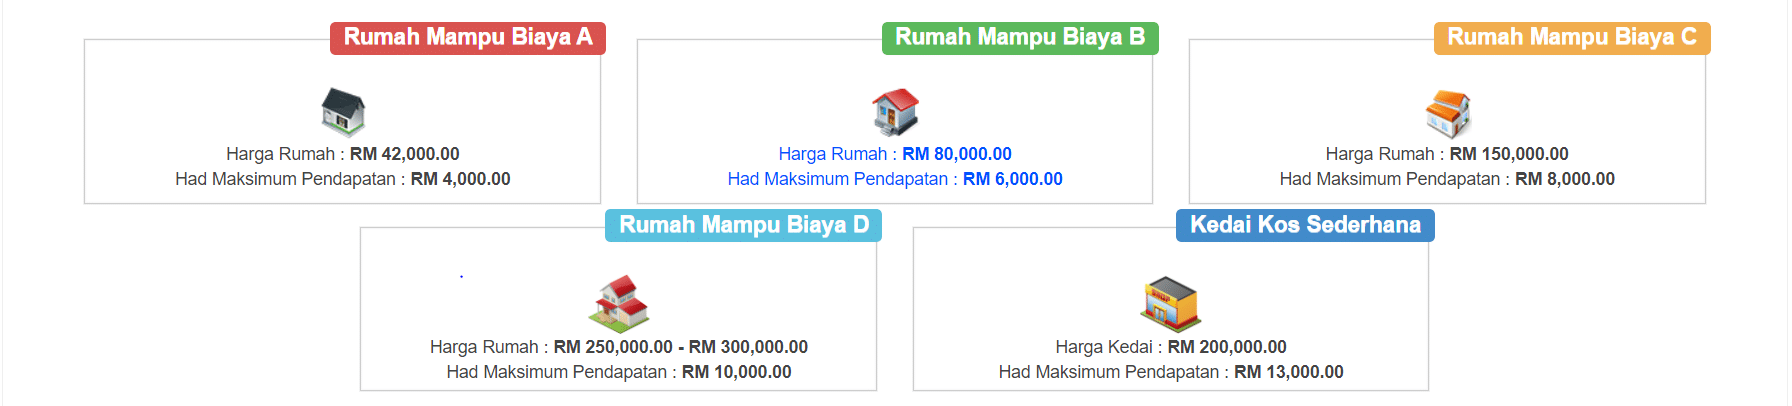 Rumah Mampu Milik Johor: Affordable Homes for Johoreans 2